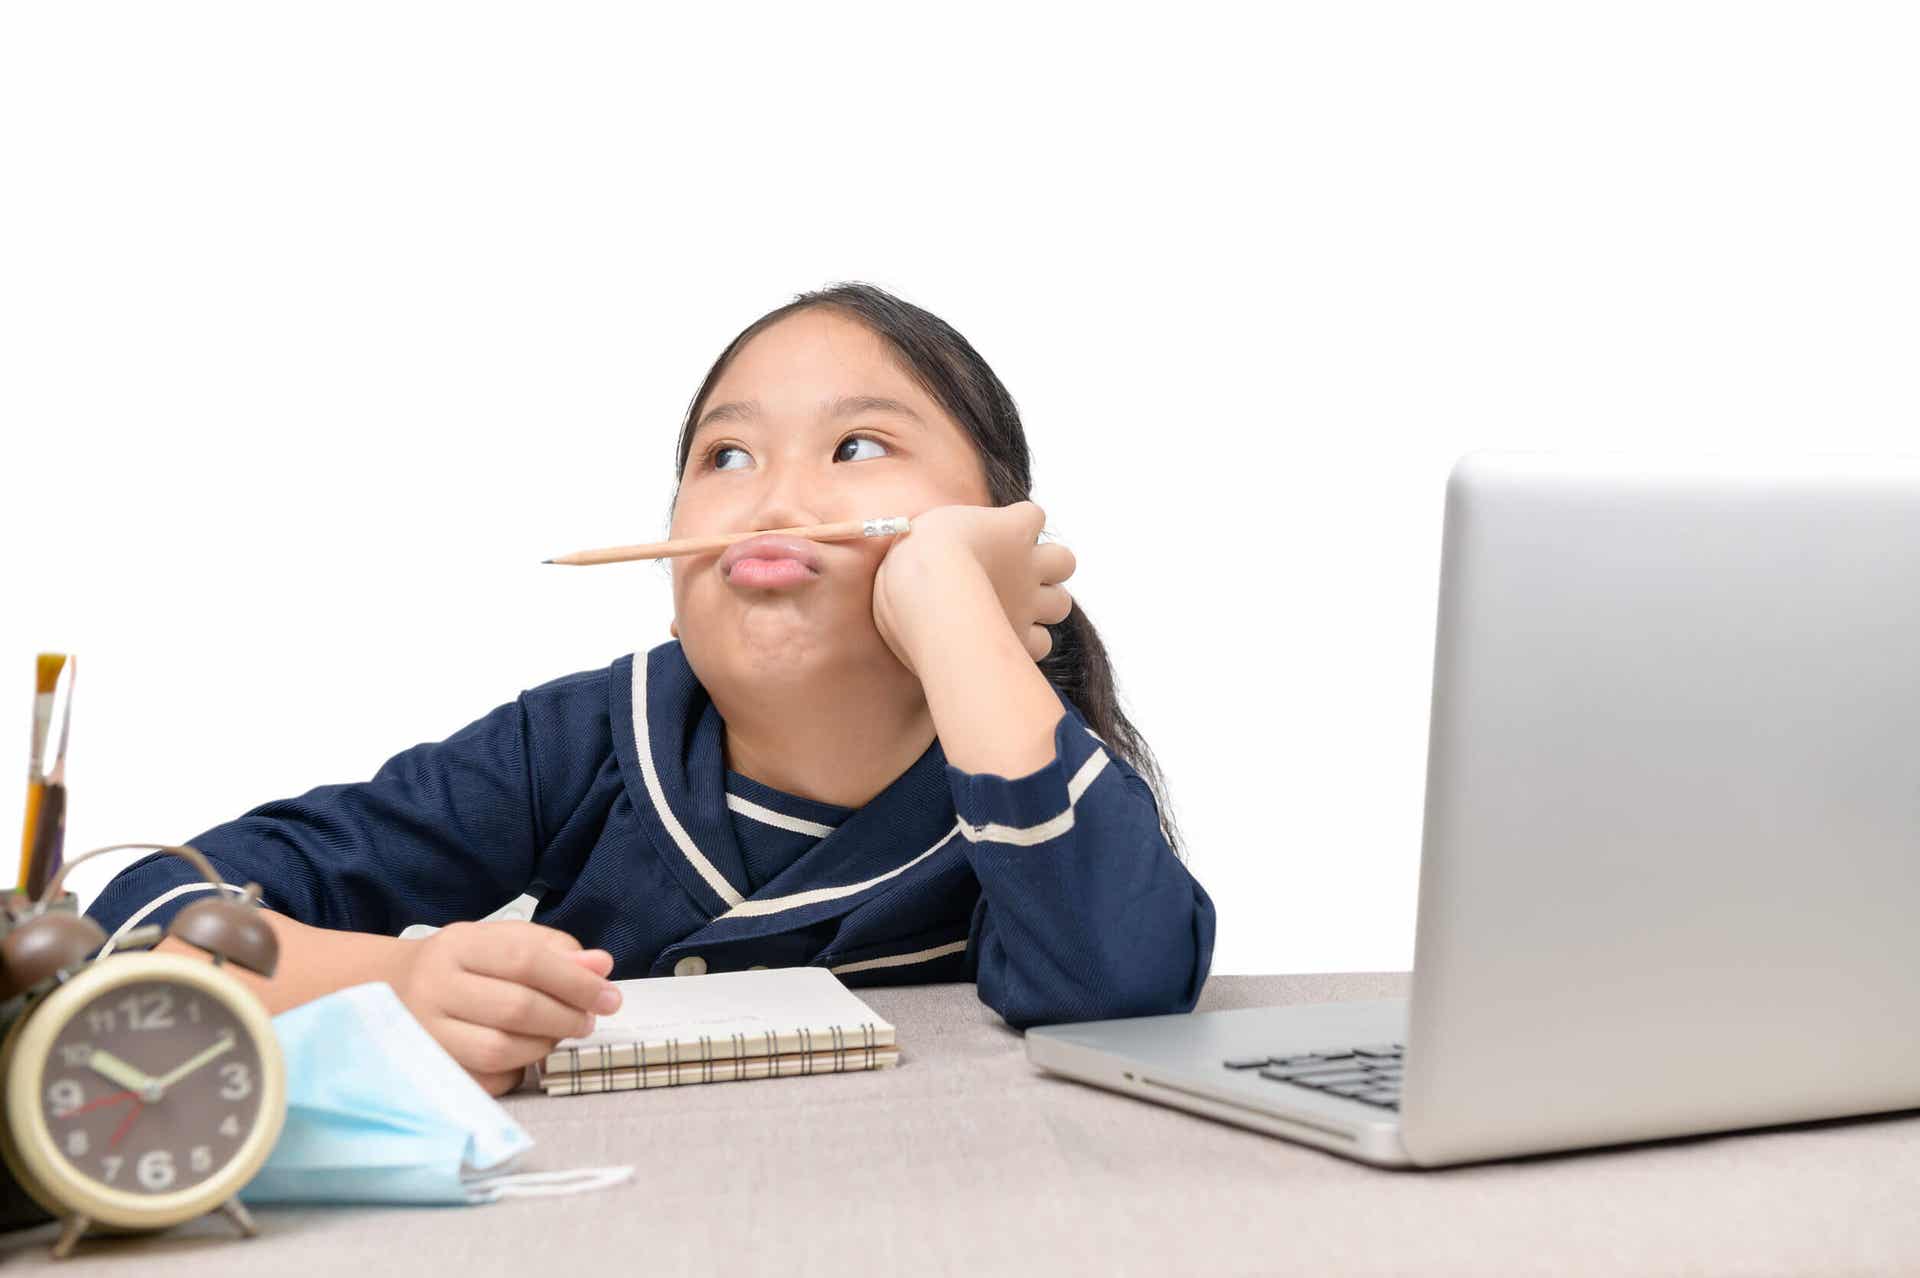 En pige, der sidder ved en bærbar computer, kigger væk og leger med en blyant